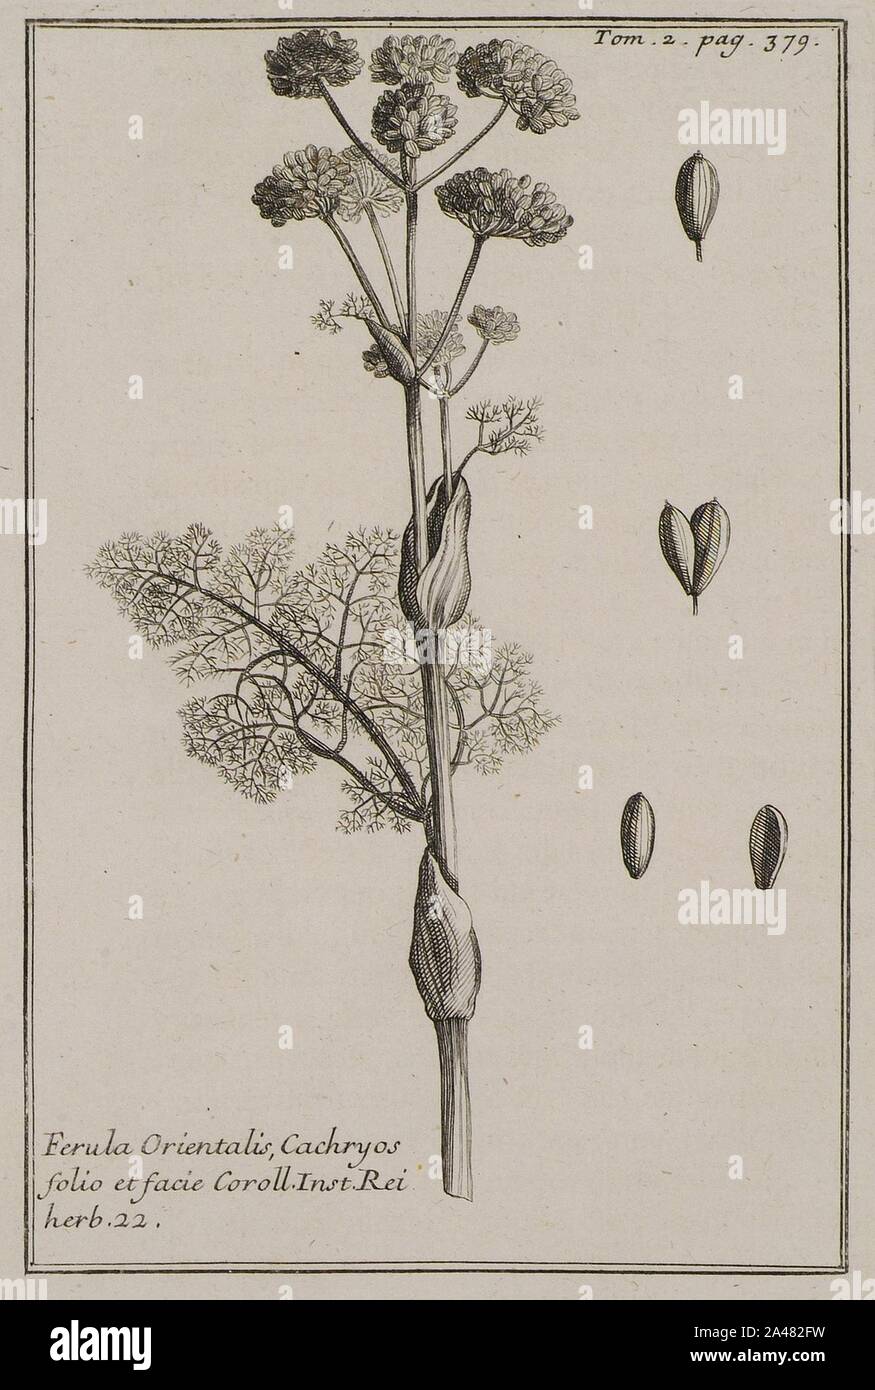 Ferula Orientalis, Cachryos folio et facie Coroll Inst Rei herb 22 - Tournefort Joseph Pitton De - 1717. Stock Photo